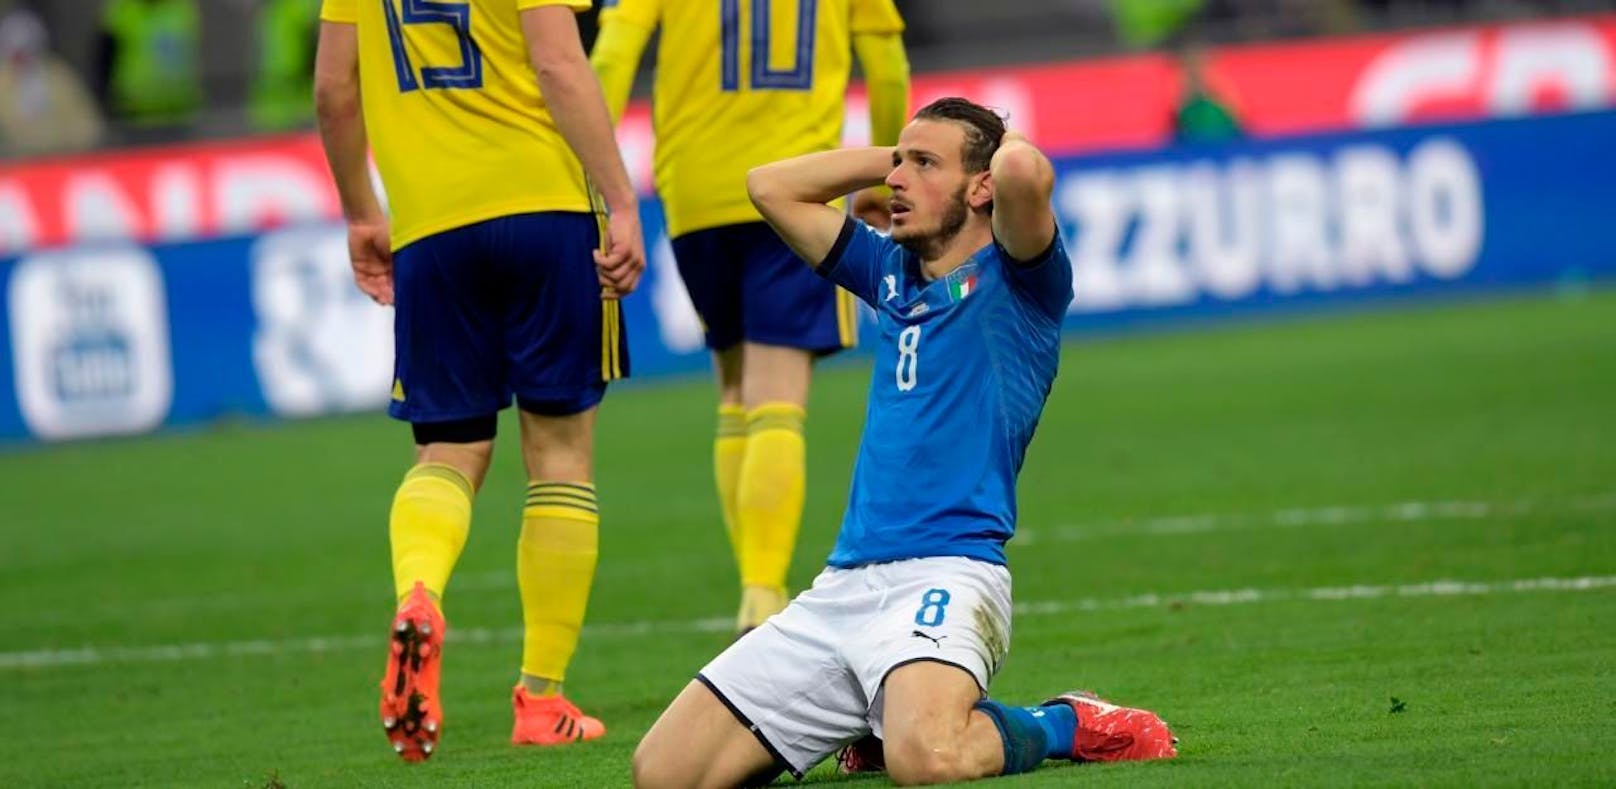 Der &quot;Calcio&quot; ist am Boden! Die Italiener verpassen die Qualifikation für die WM 2018.